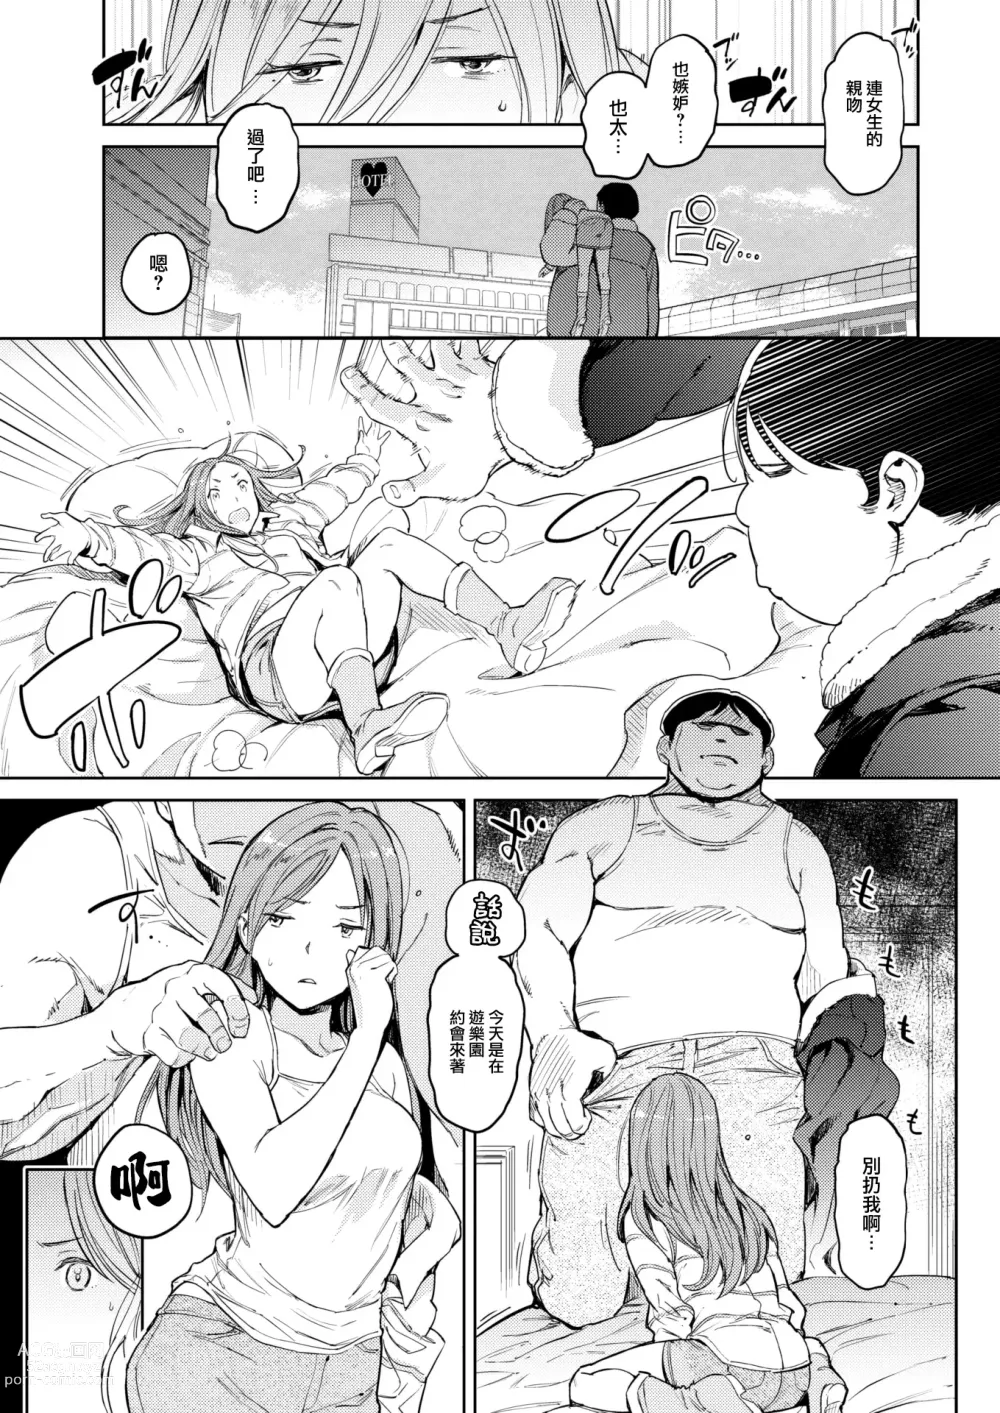 Page 6 of manga Aishi no Giant